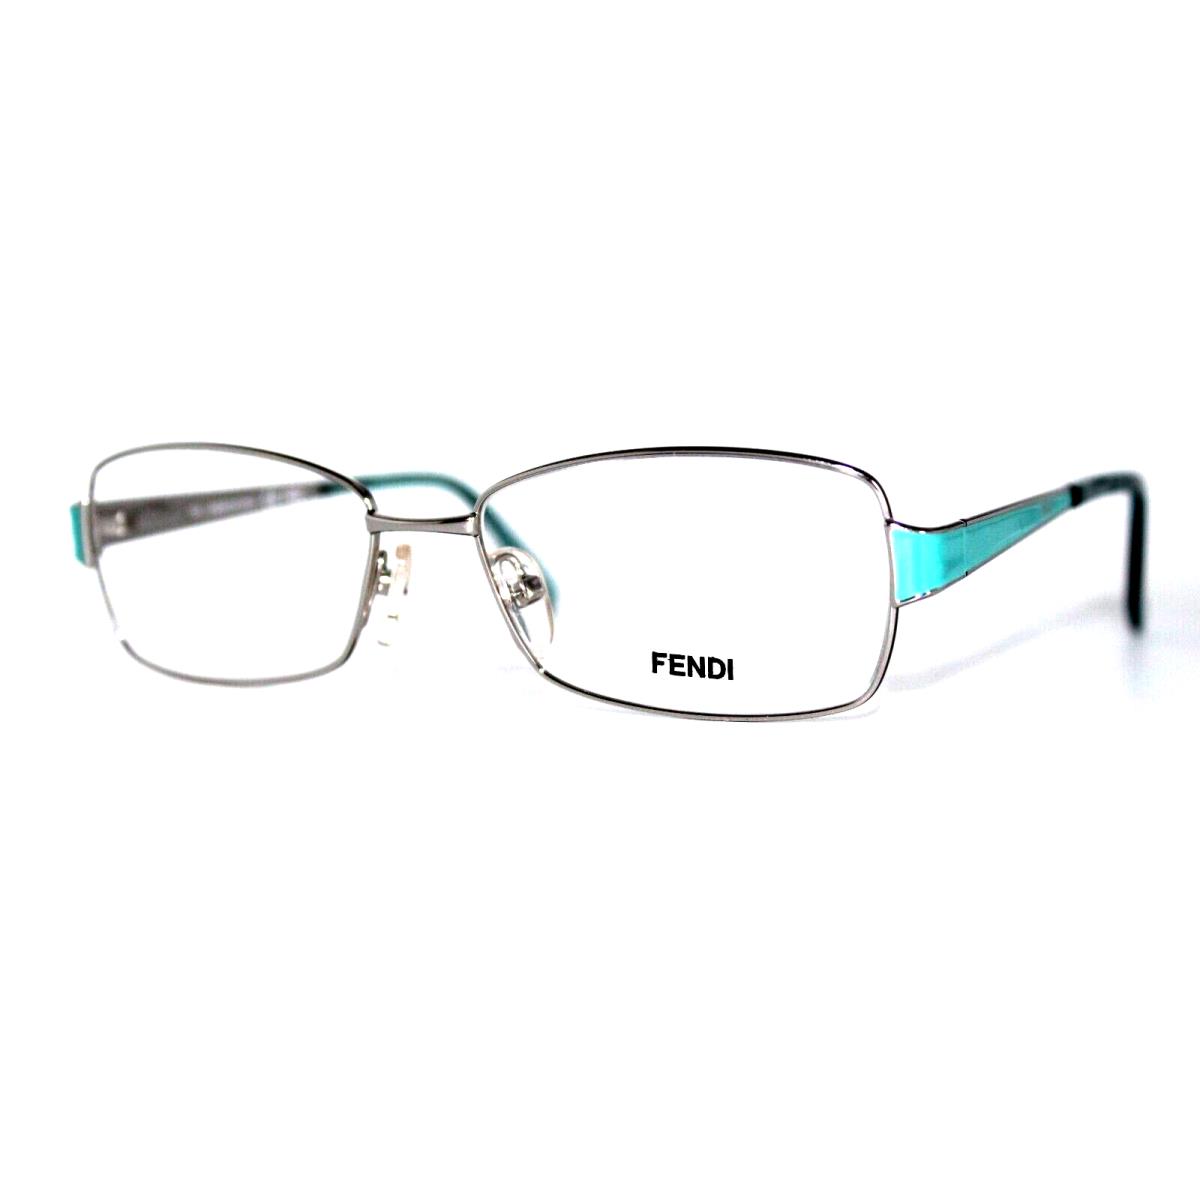 Fendi F1041 045 Silver Eyeglasses Frames 52-15-135MM W/case